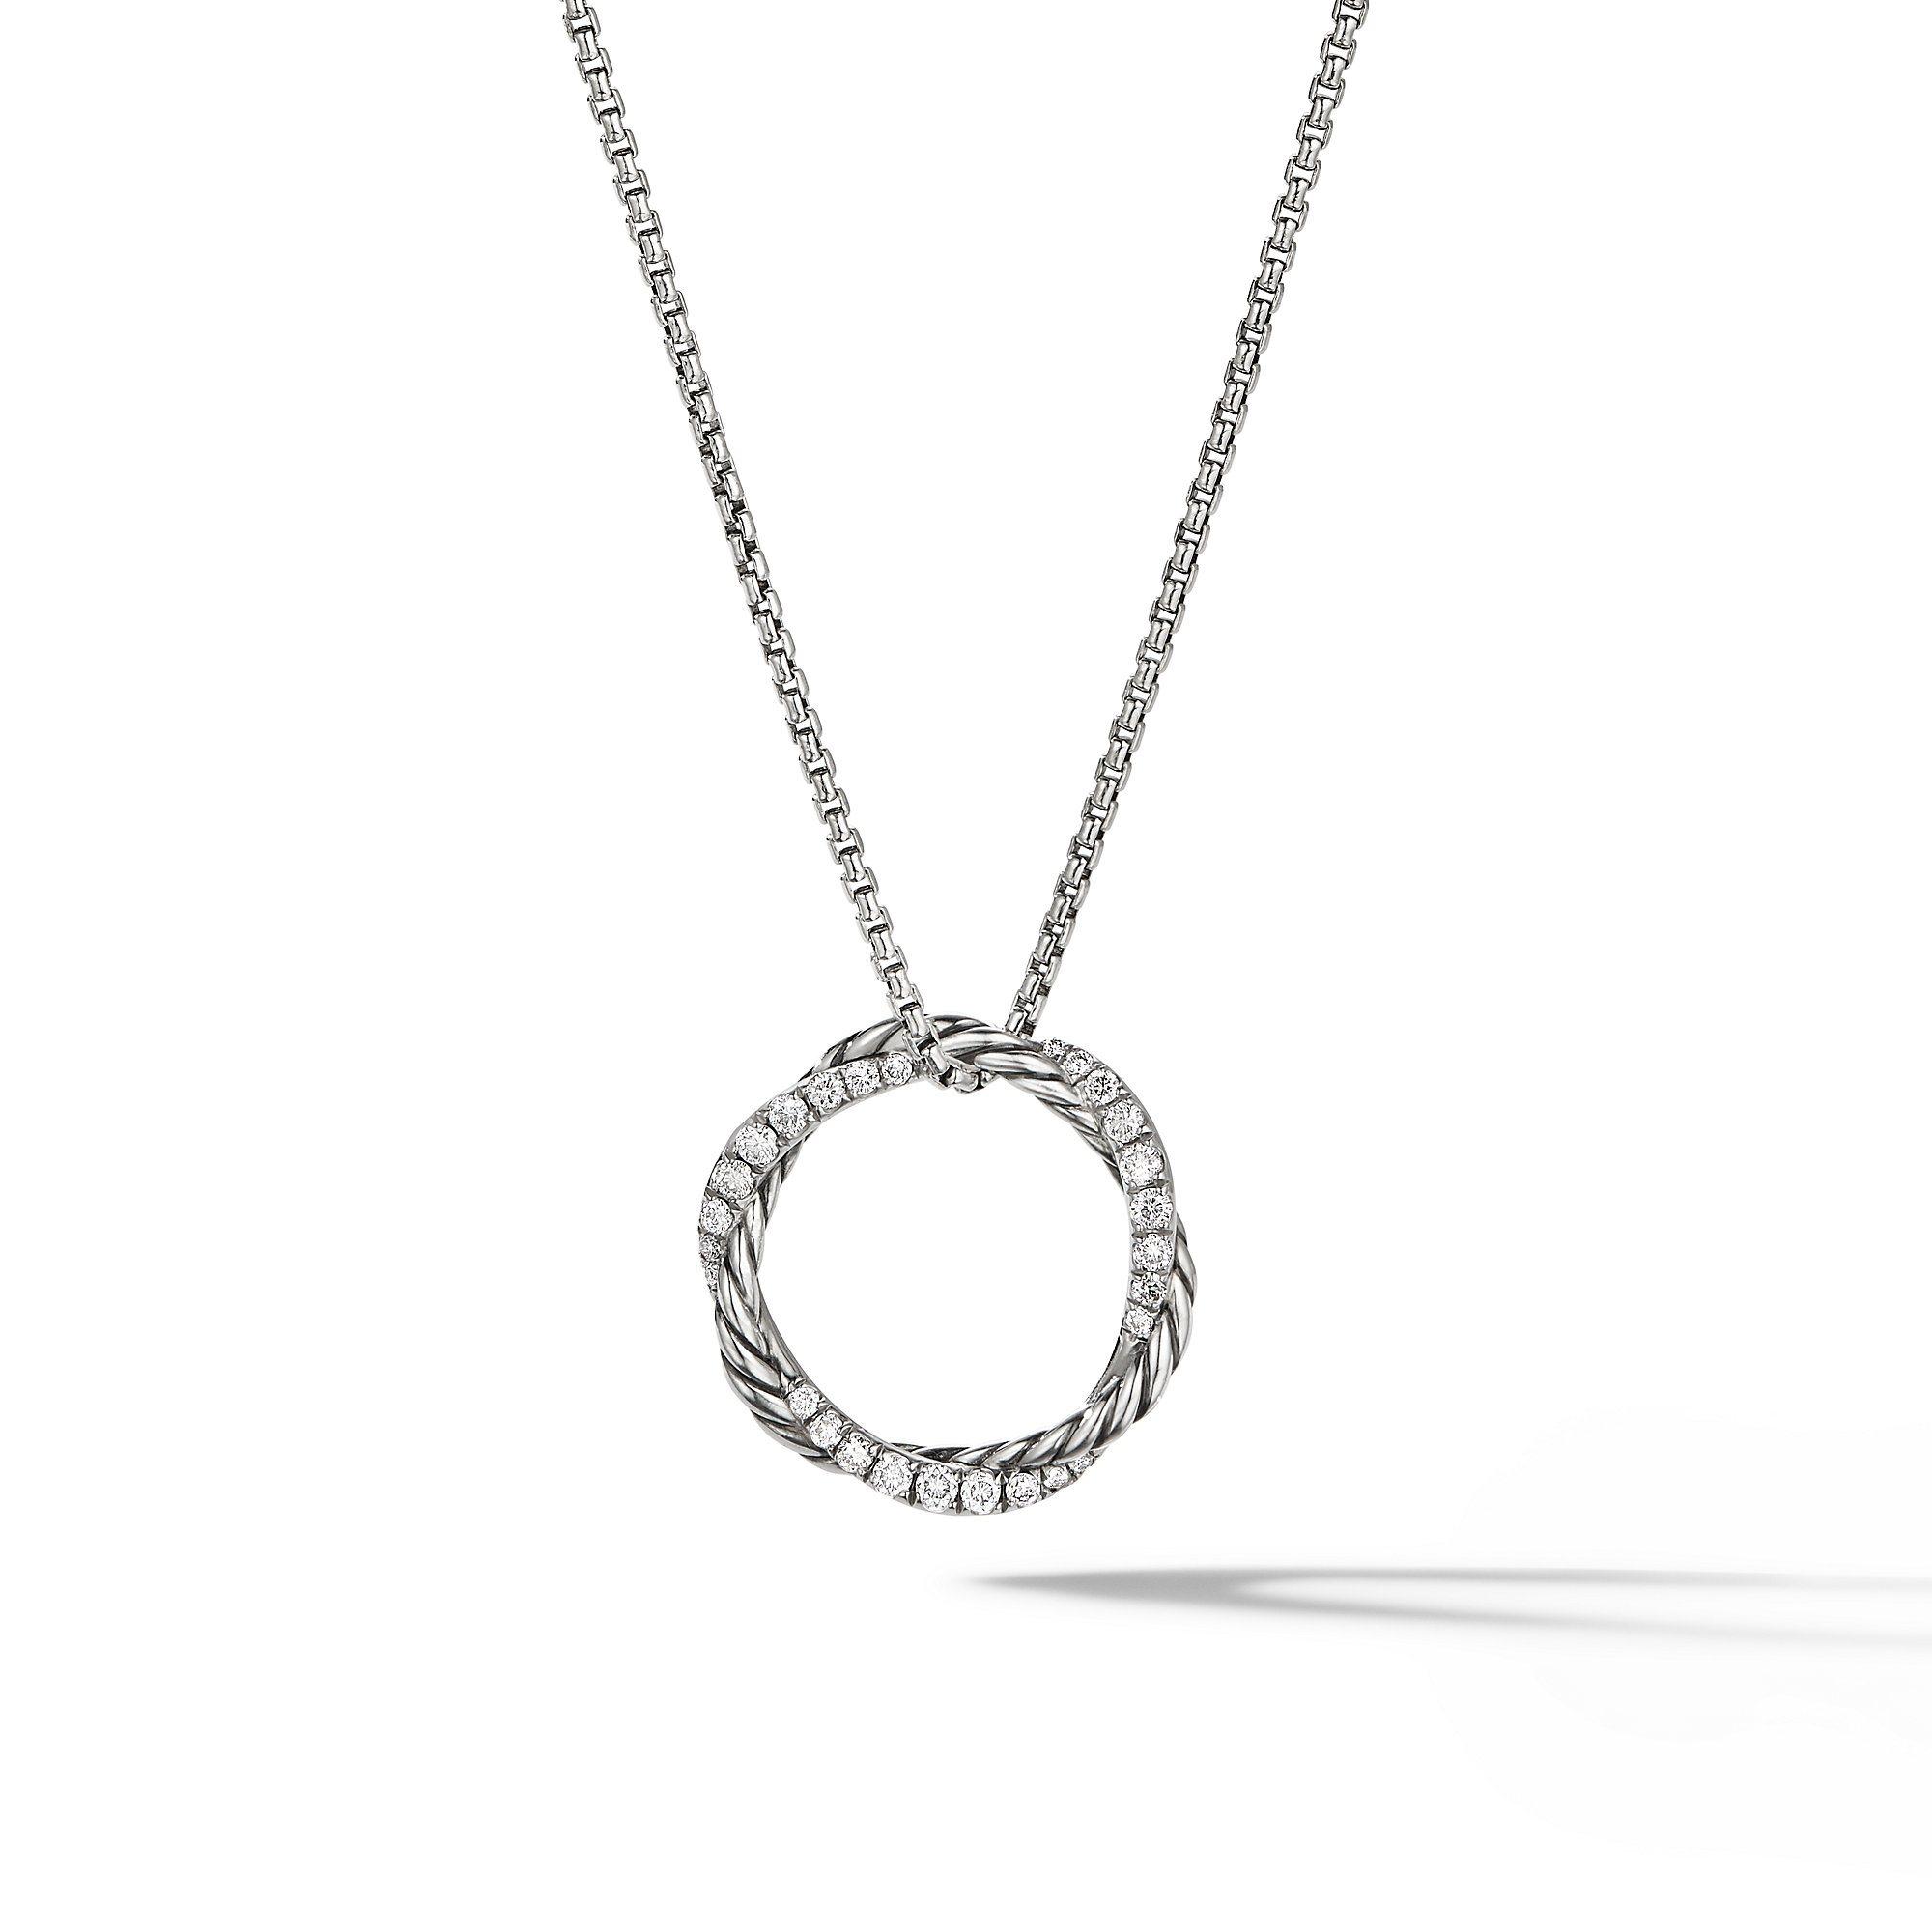 David Yurman Petite Infinity Pendant Necklace with Pave Diamonds